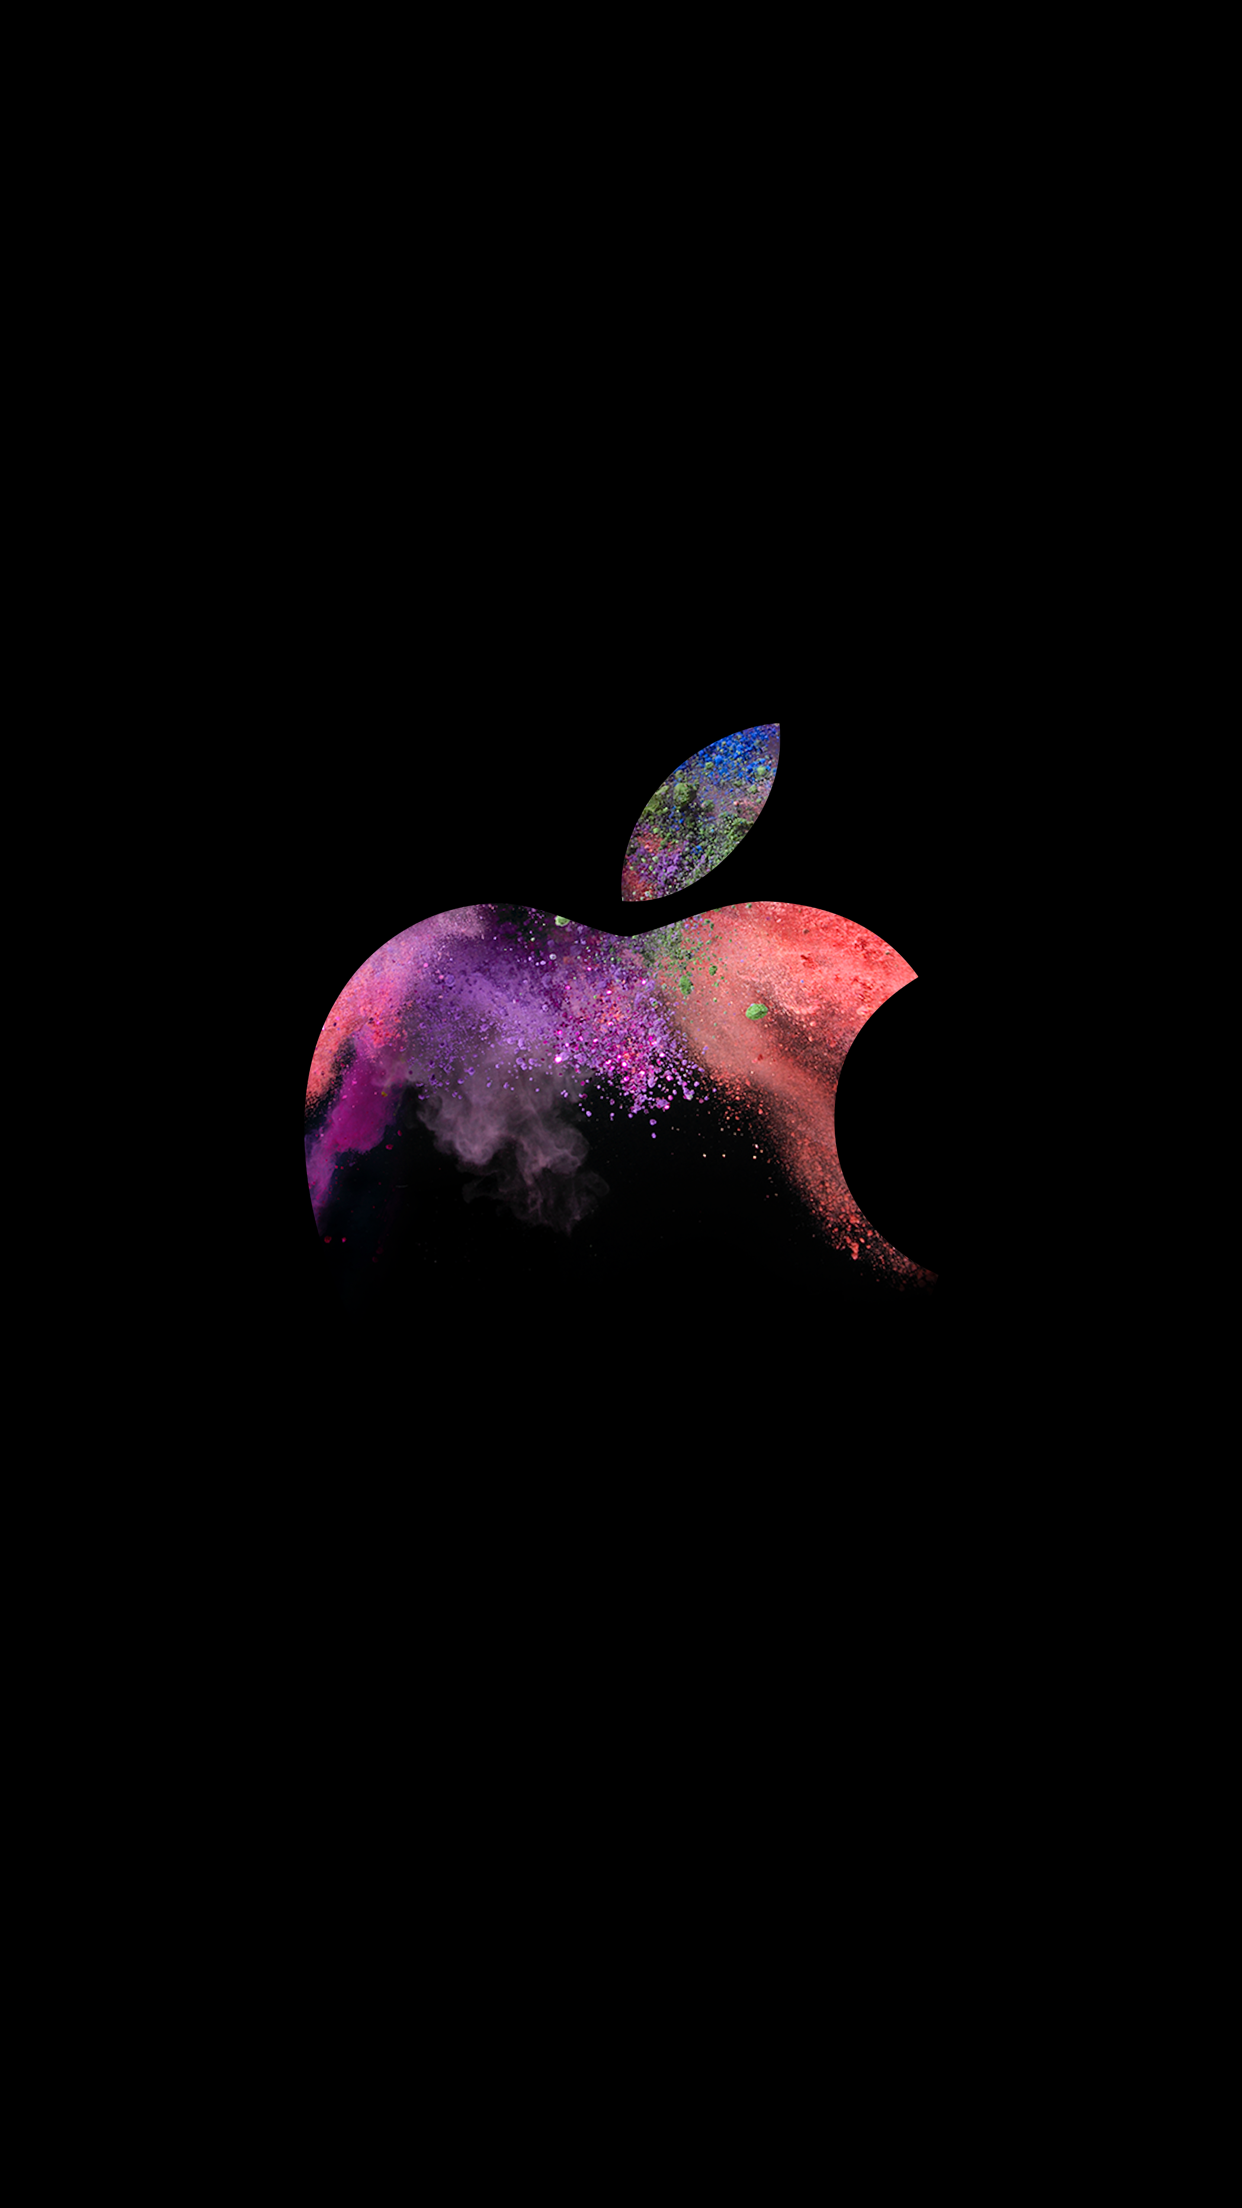 Apple Rosa Hintergrundbild 1242x2208. Stimmungsvolle Wallpaper Zur Apple Herbst Keynote L Weblogit